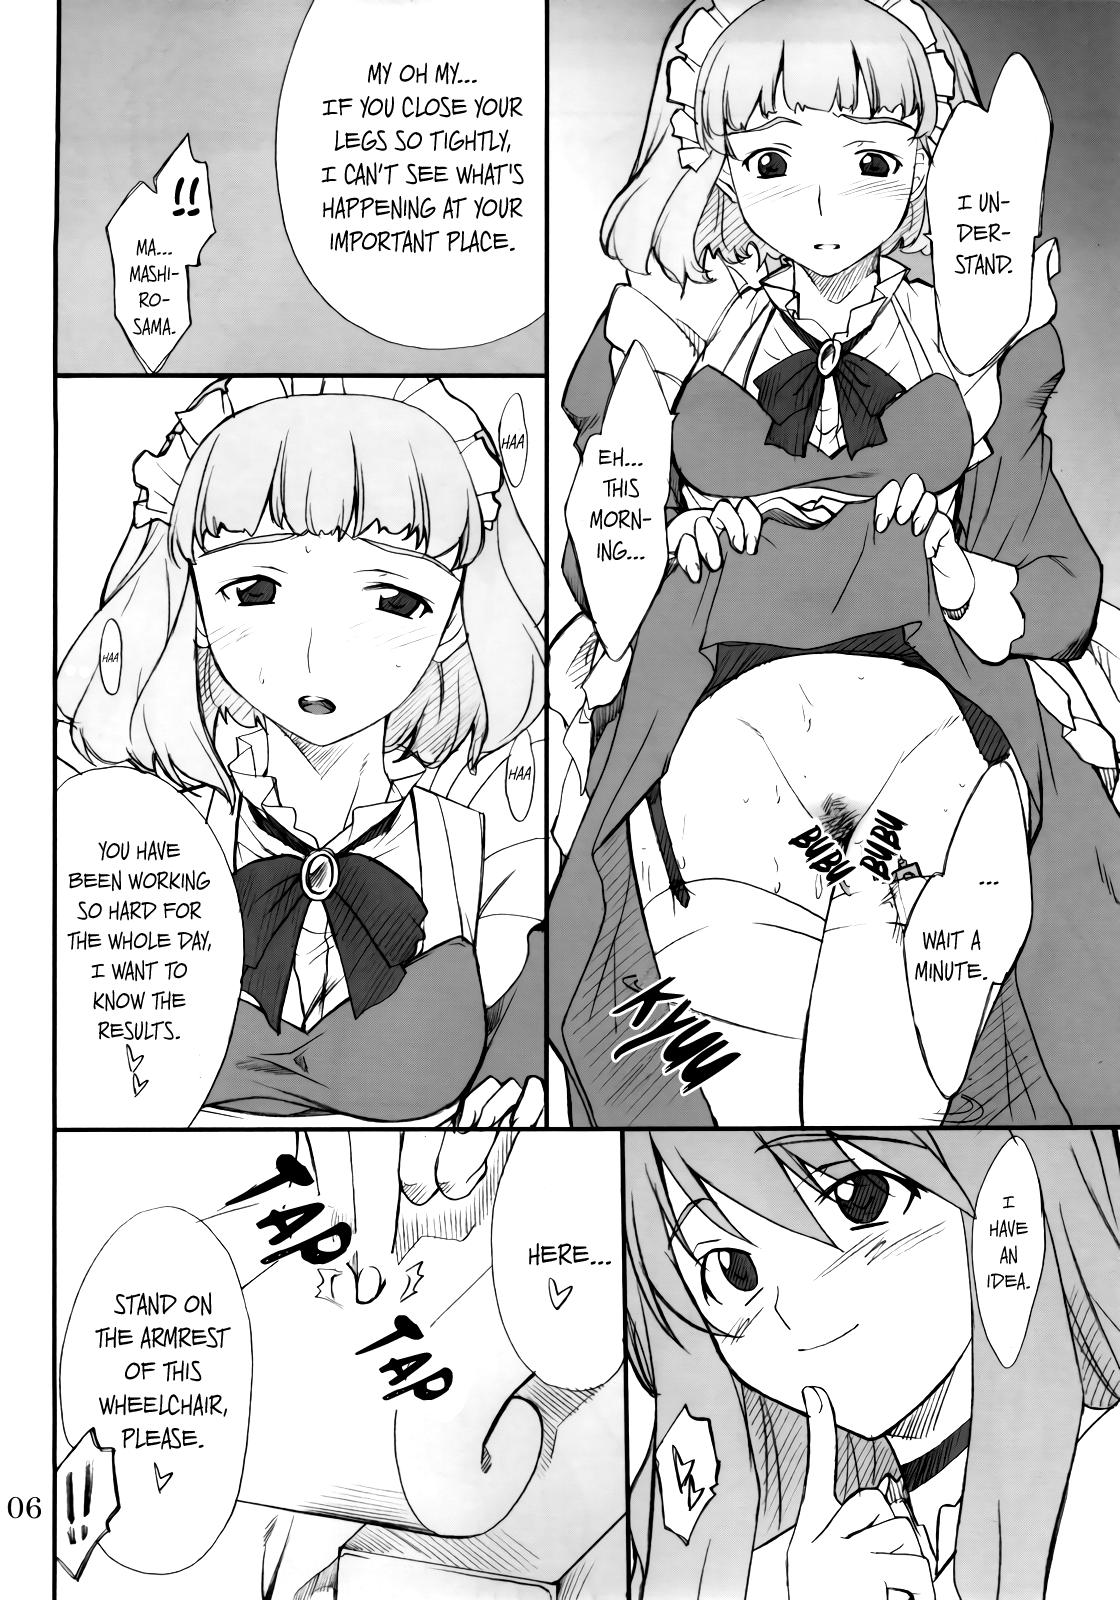 Sofa Fumi-san to Iroiro... - Mai-hime Morrita - Page 5